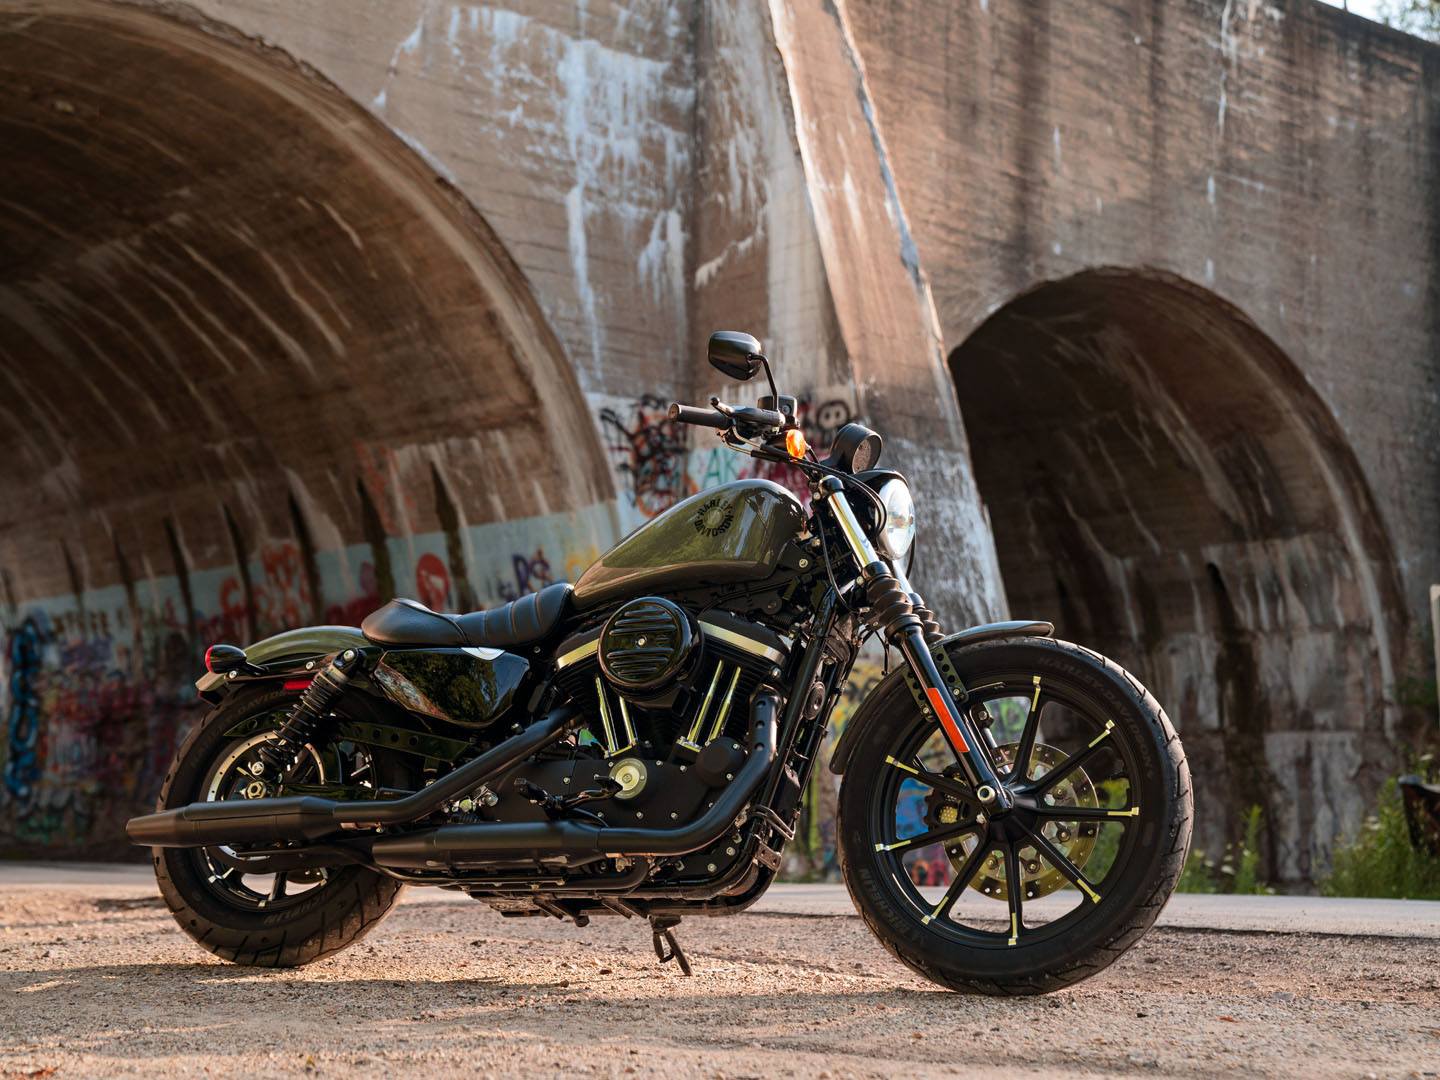 2021 Harley-Davidson Iron 883™ in Colorado Springs, Colorado - Photo 6